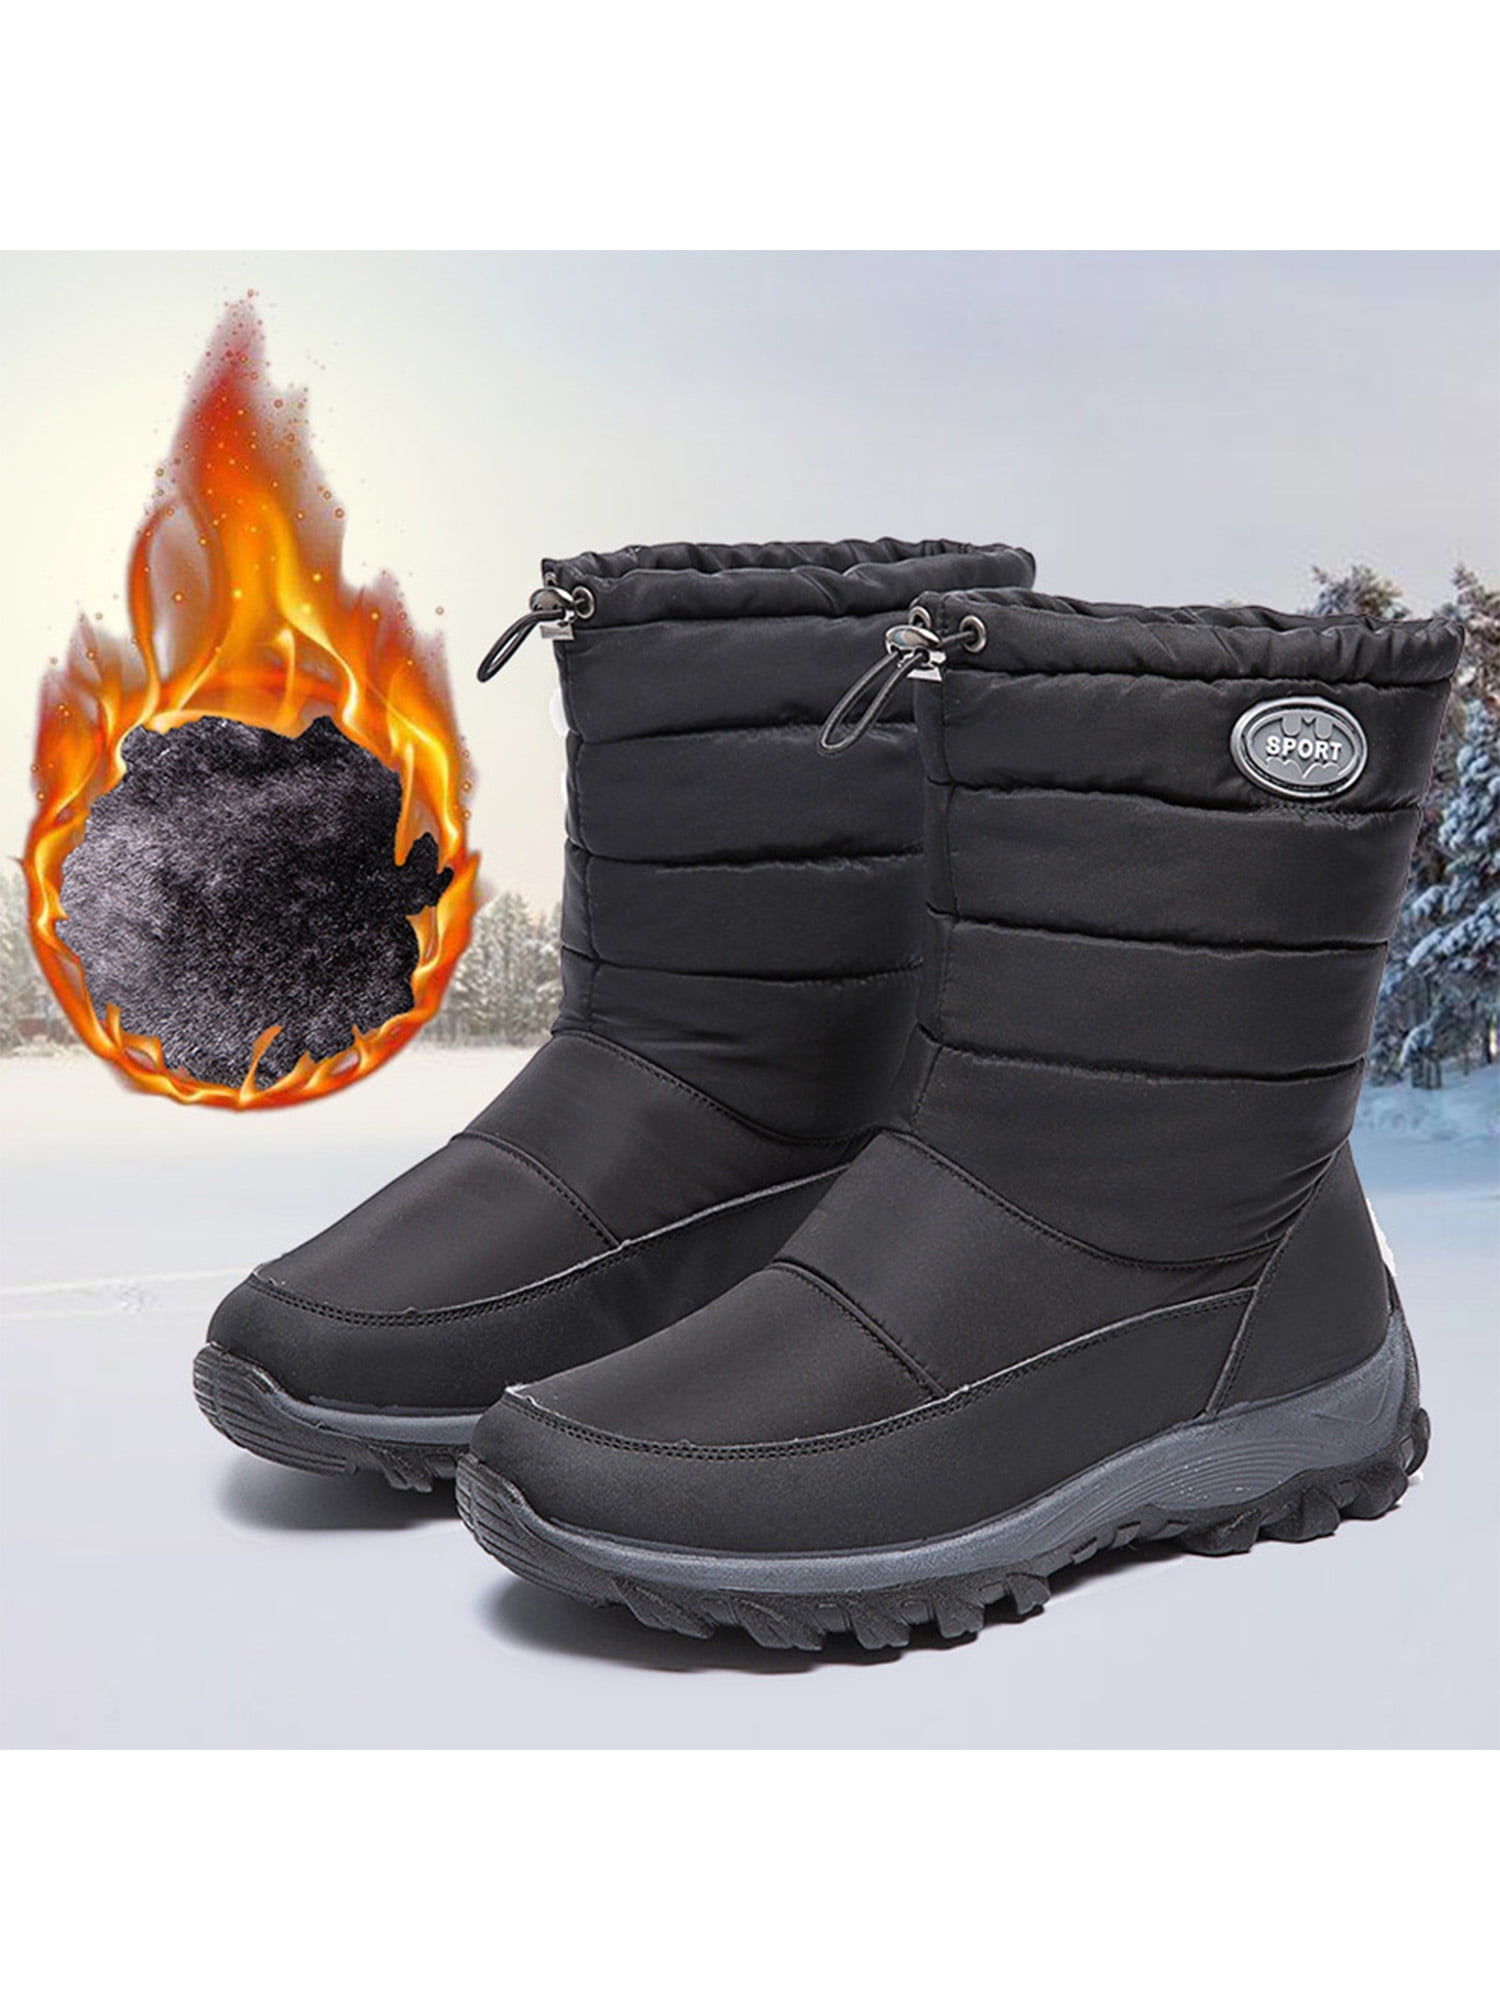 Woobling Women's Snow Boots Wide Width Winter Waterproof Sheos Warm Non ...